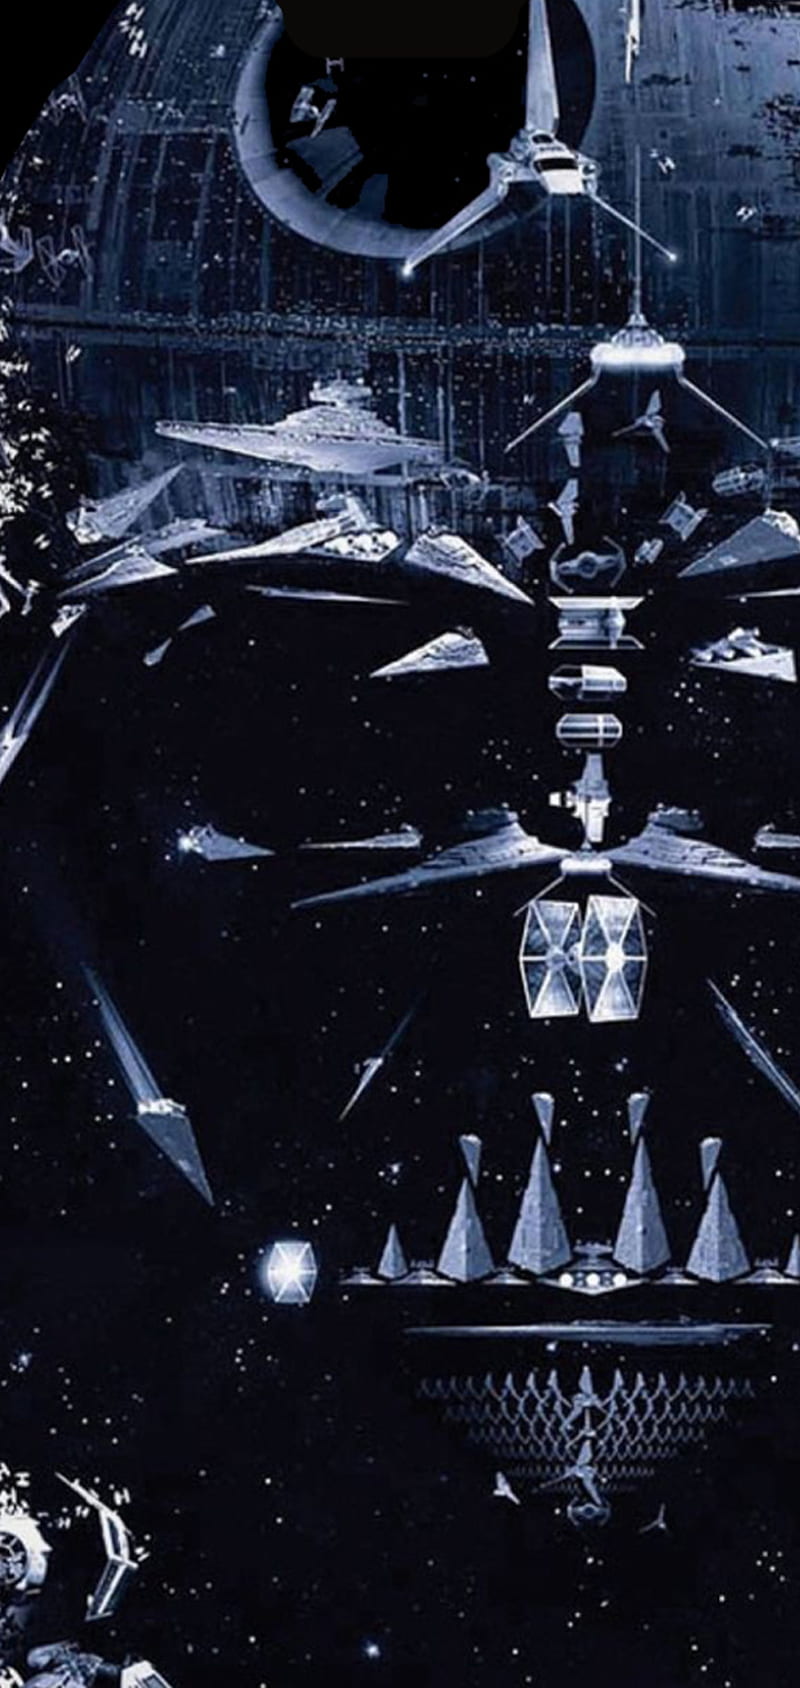 Starwars Notch Black Darth Vader Movie Oneplus Star Wars Vader Hd Phone Wallpaper Peakpx